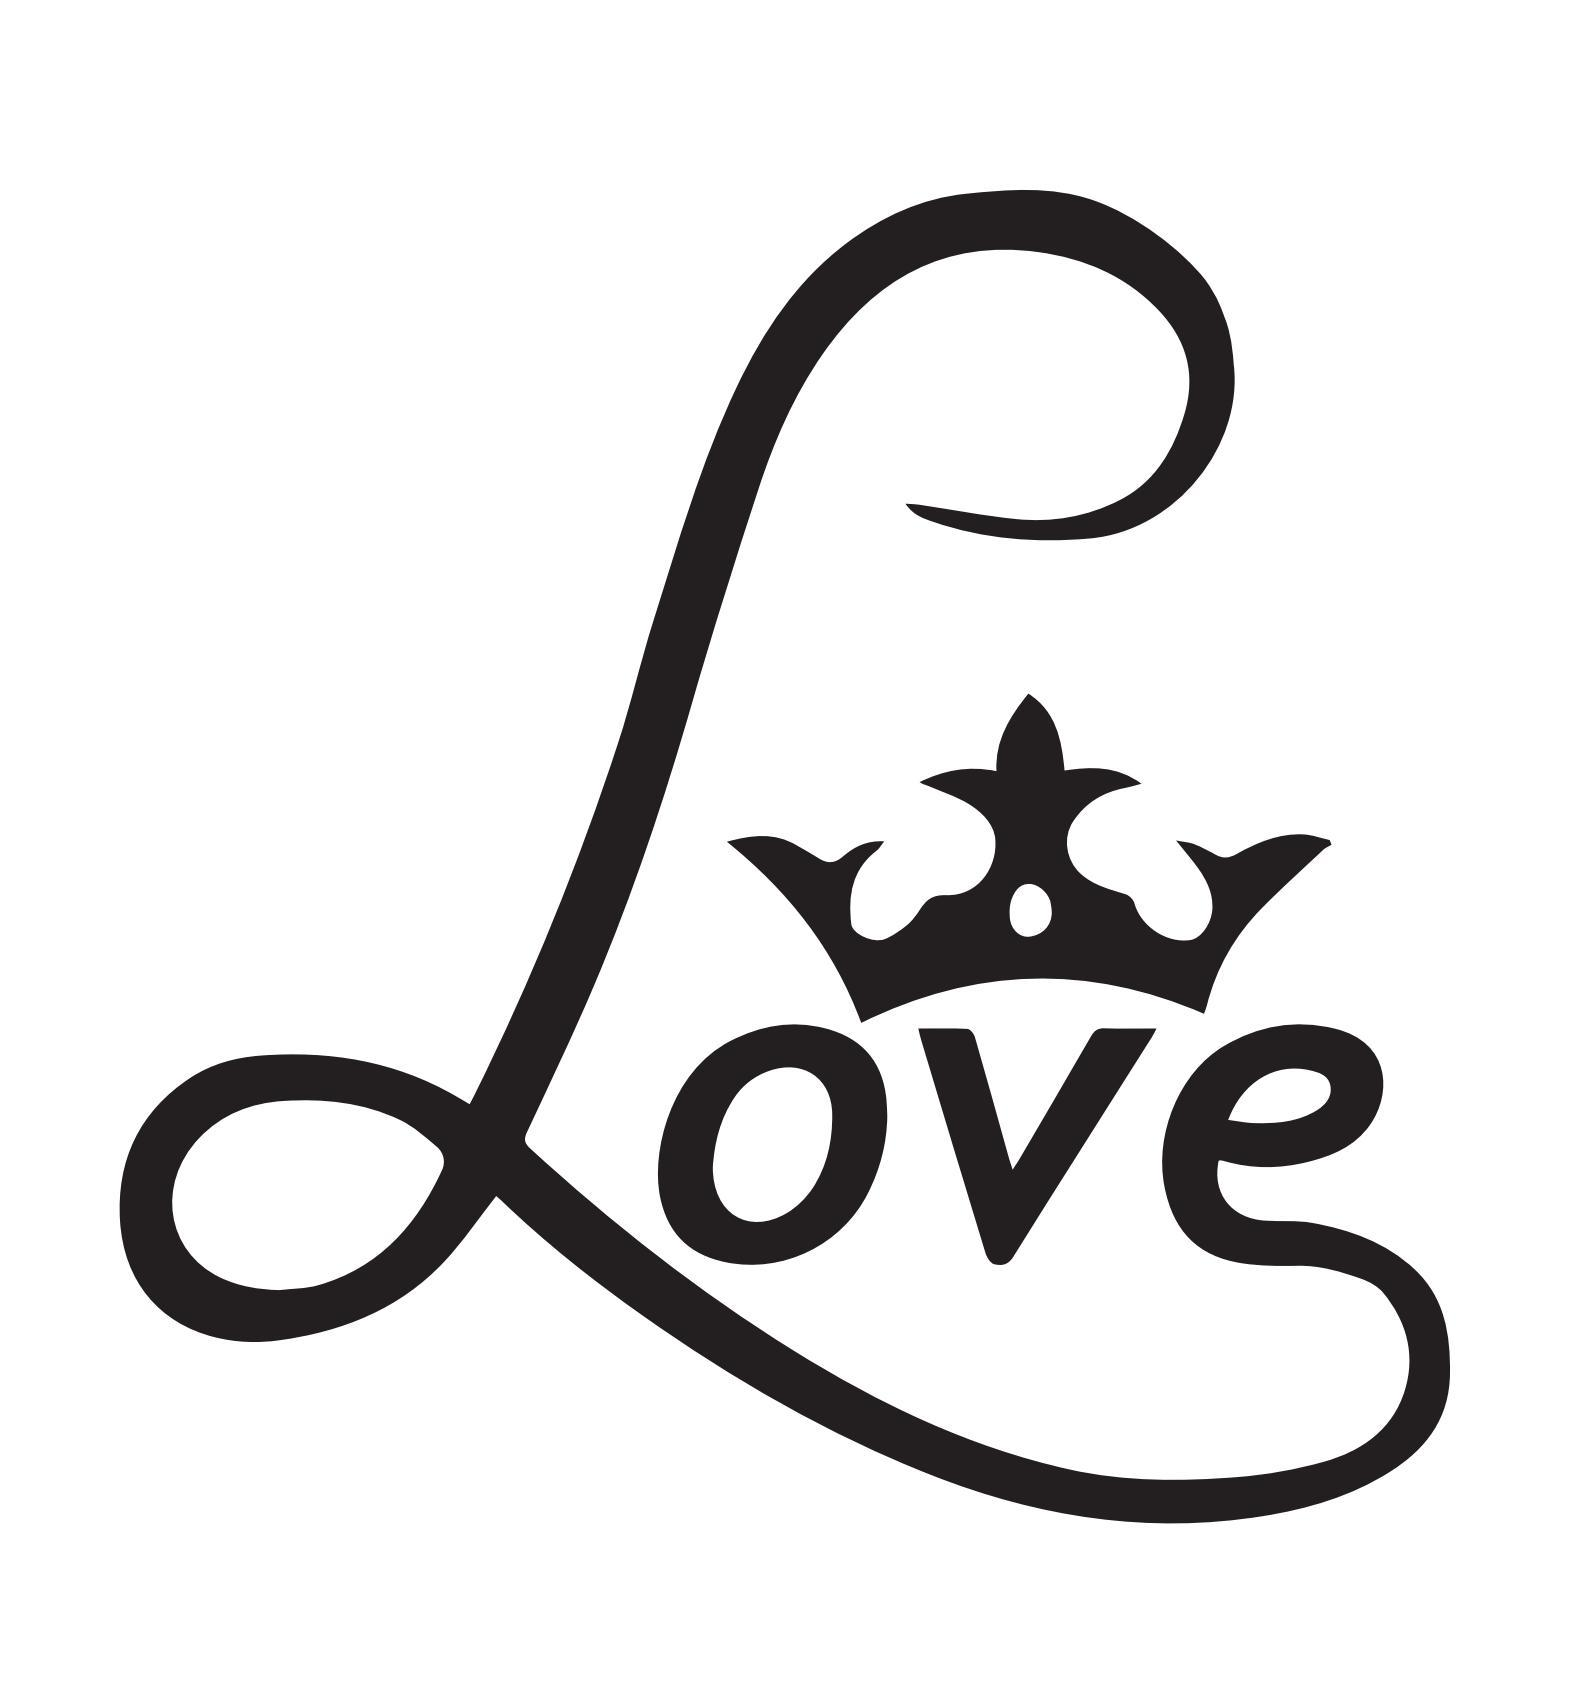 love小字体符号图片